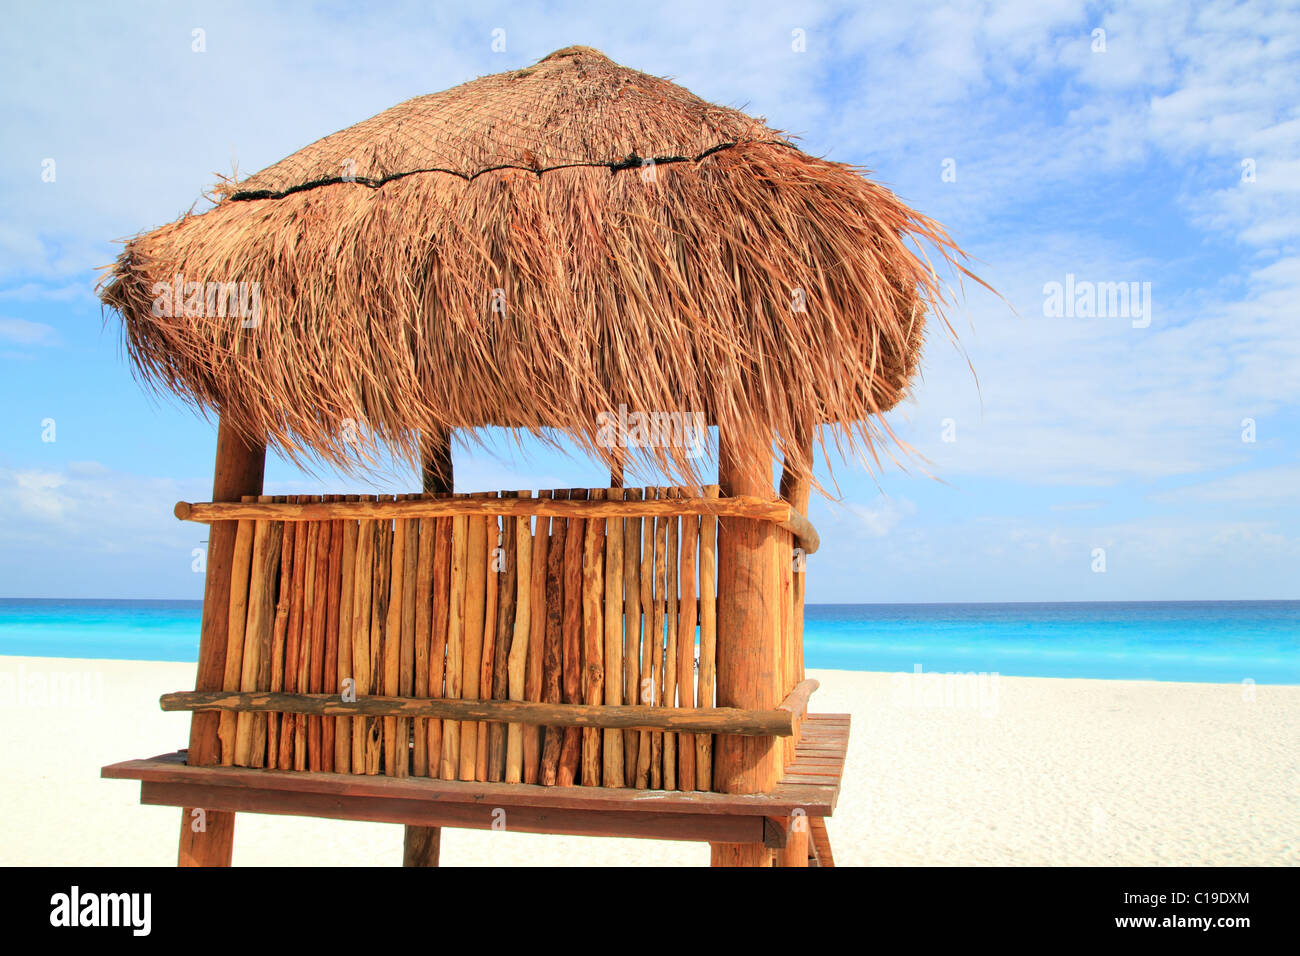 Bois de baywatch brown house à Cancun beach hut palapa toit ouvrant Banque D'Images